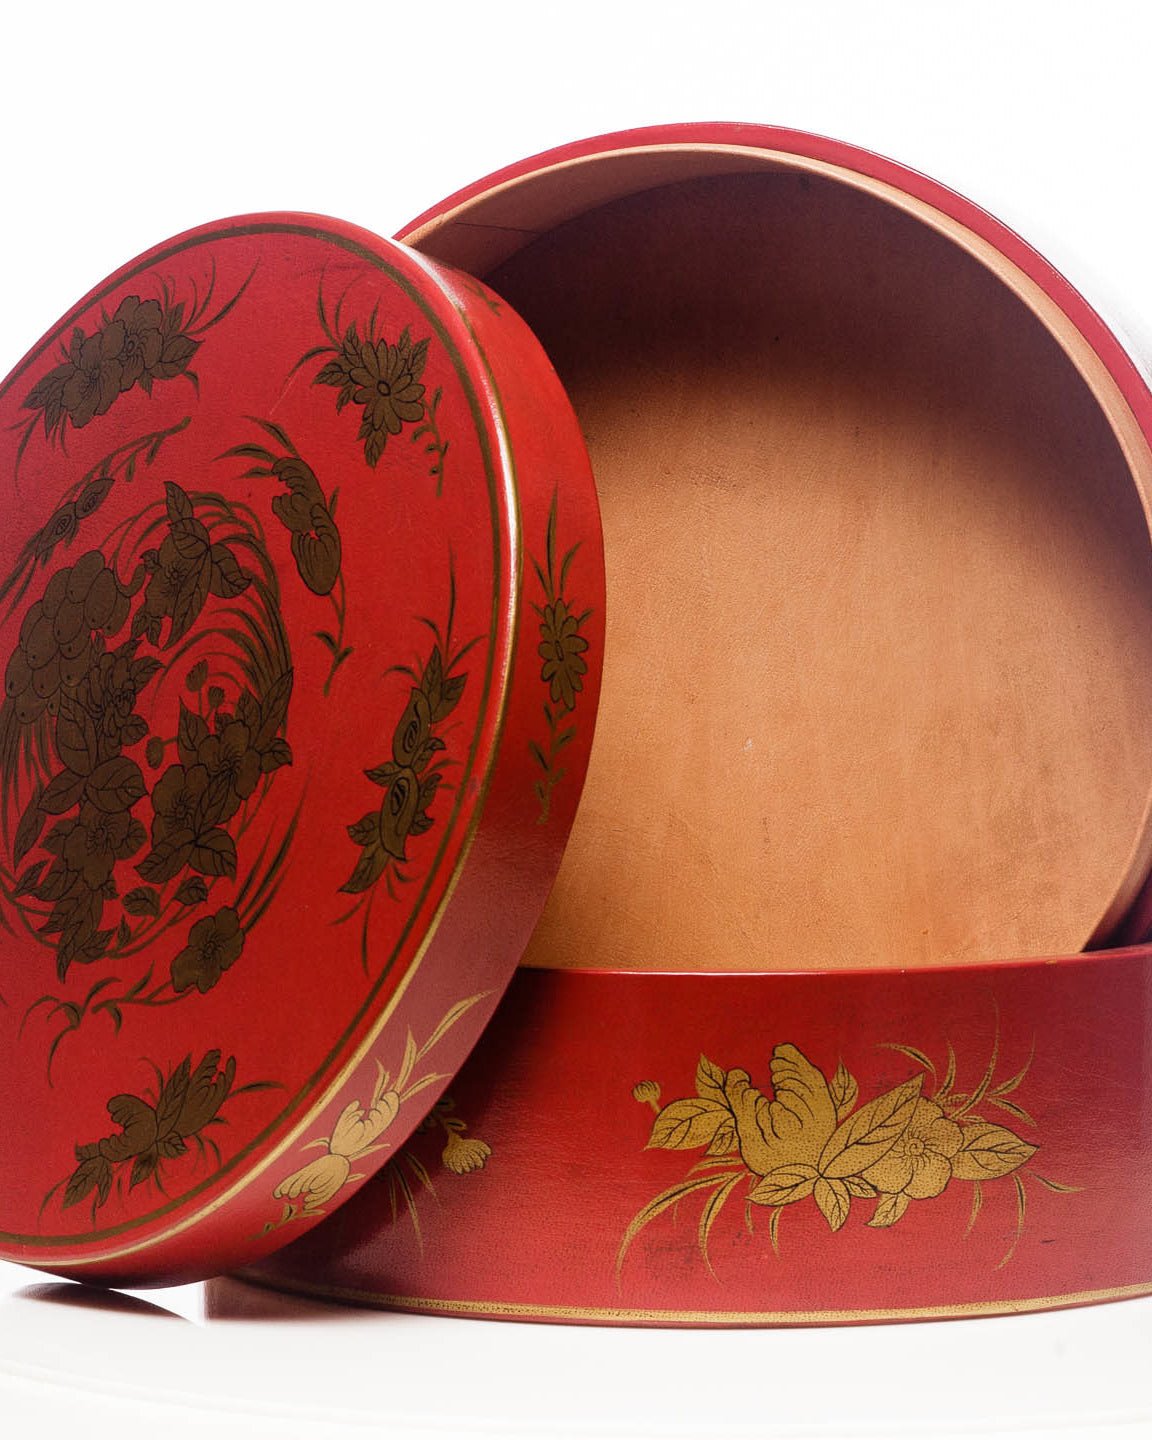 Mandarin Red Nurture 2-Tier Round Leather Sewing Box (14")